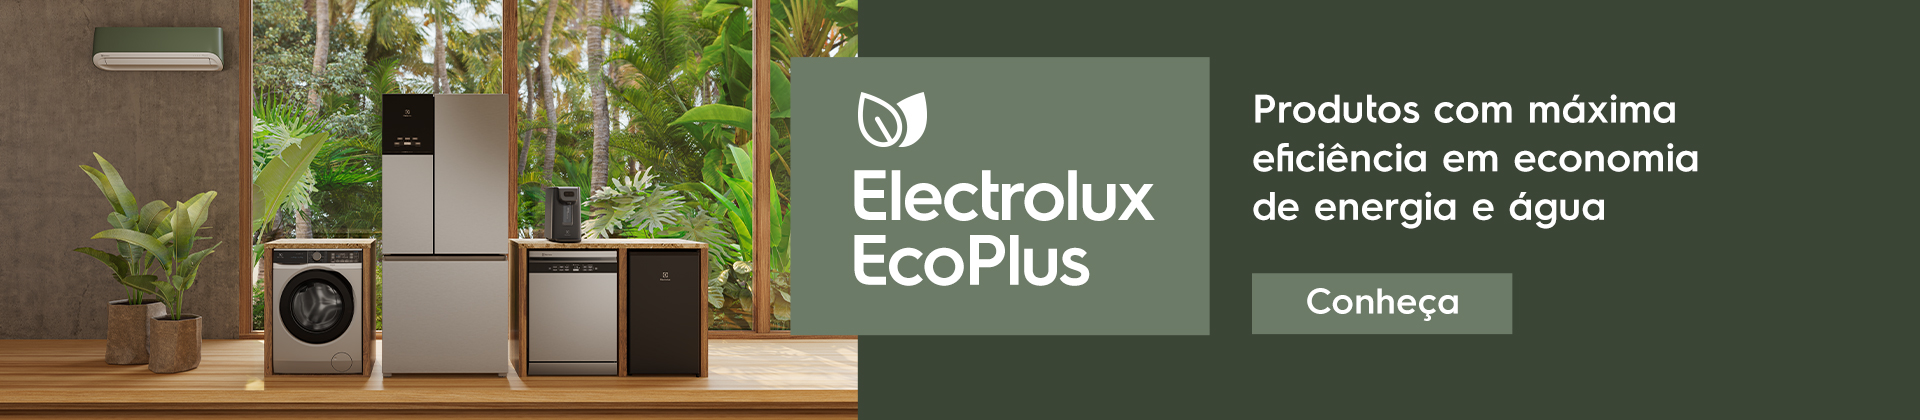 Electrolux EcoPlus